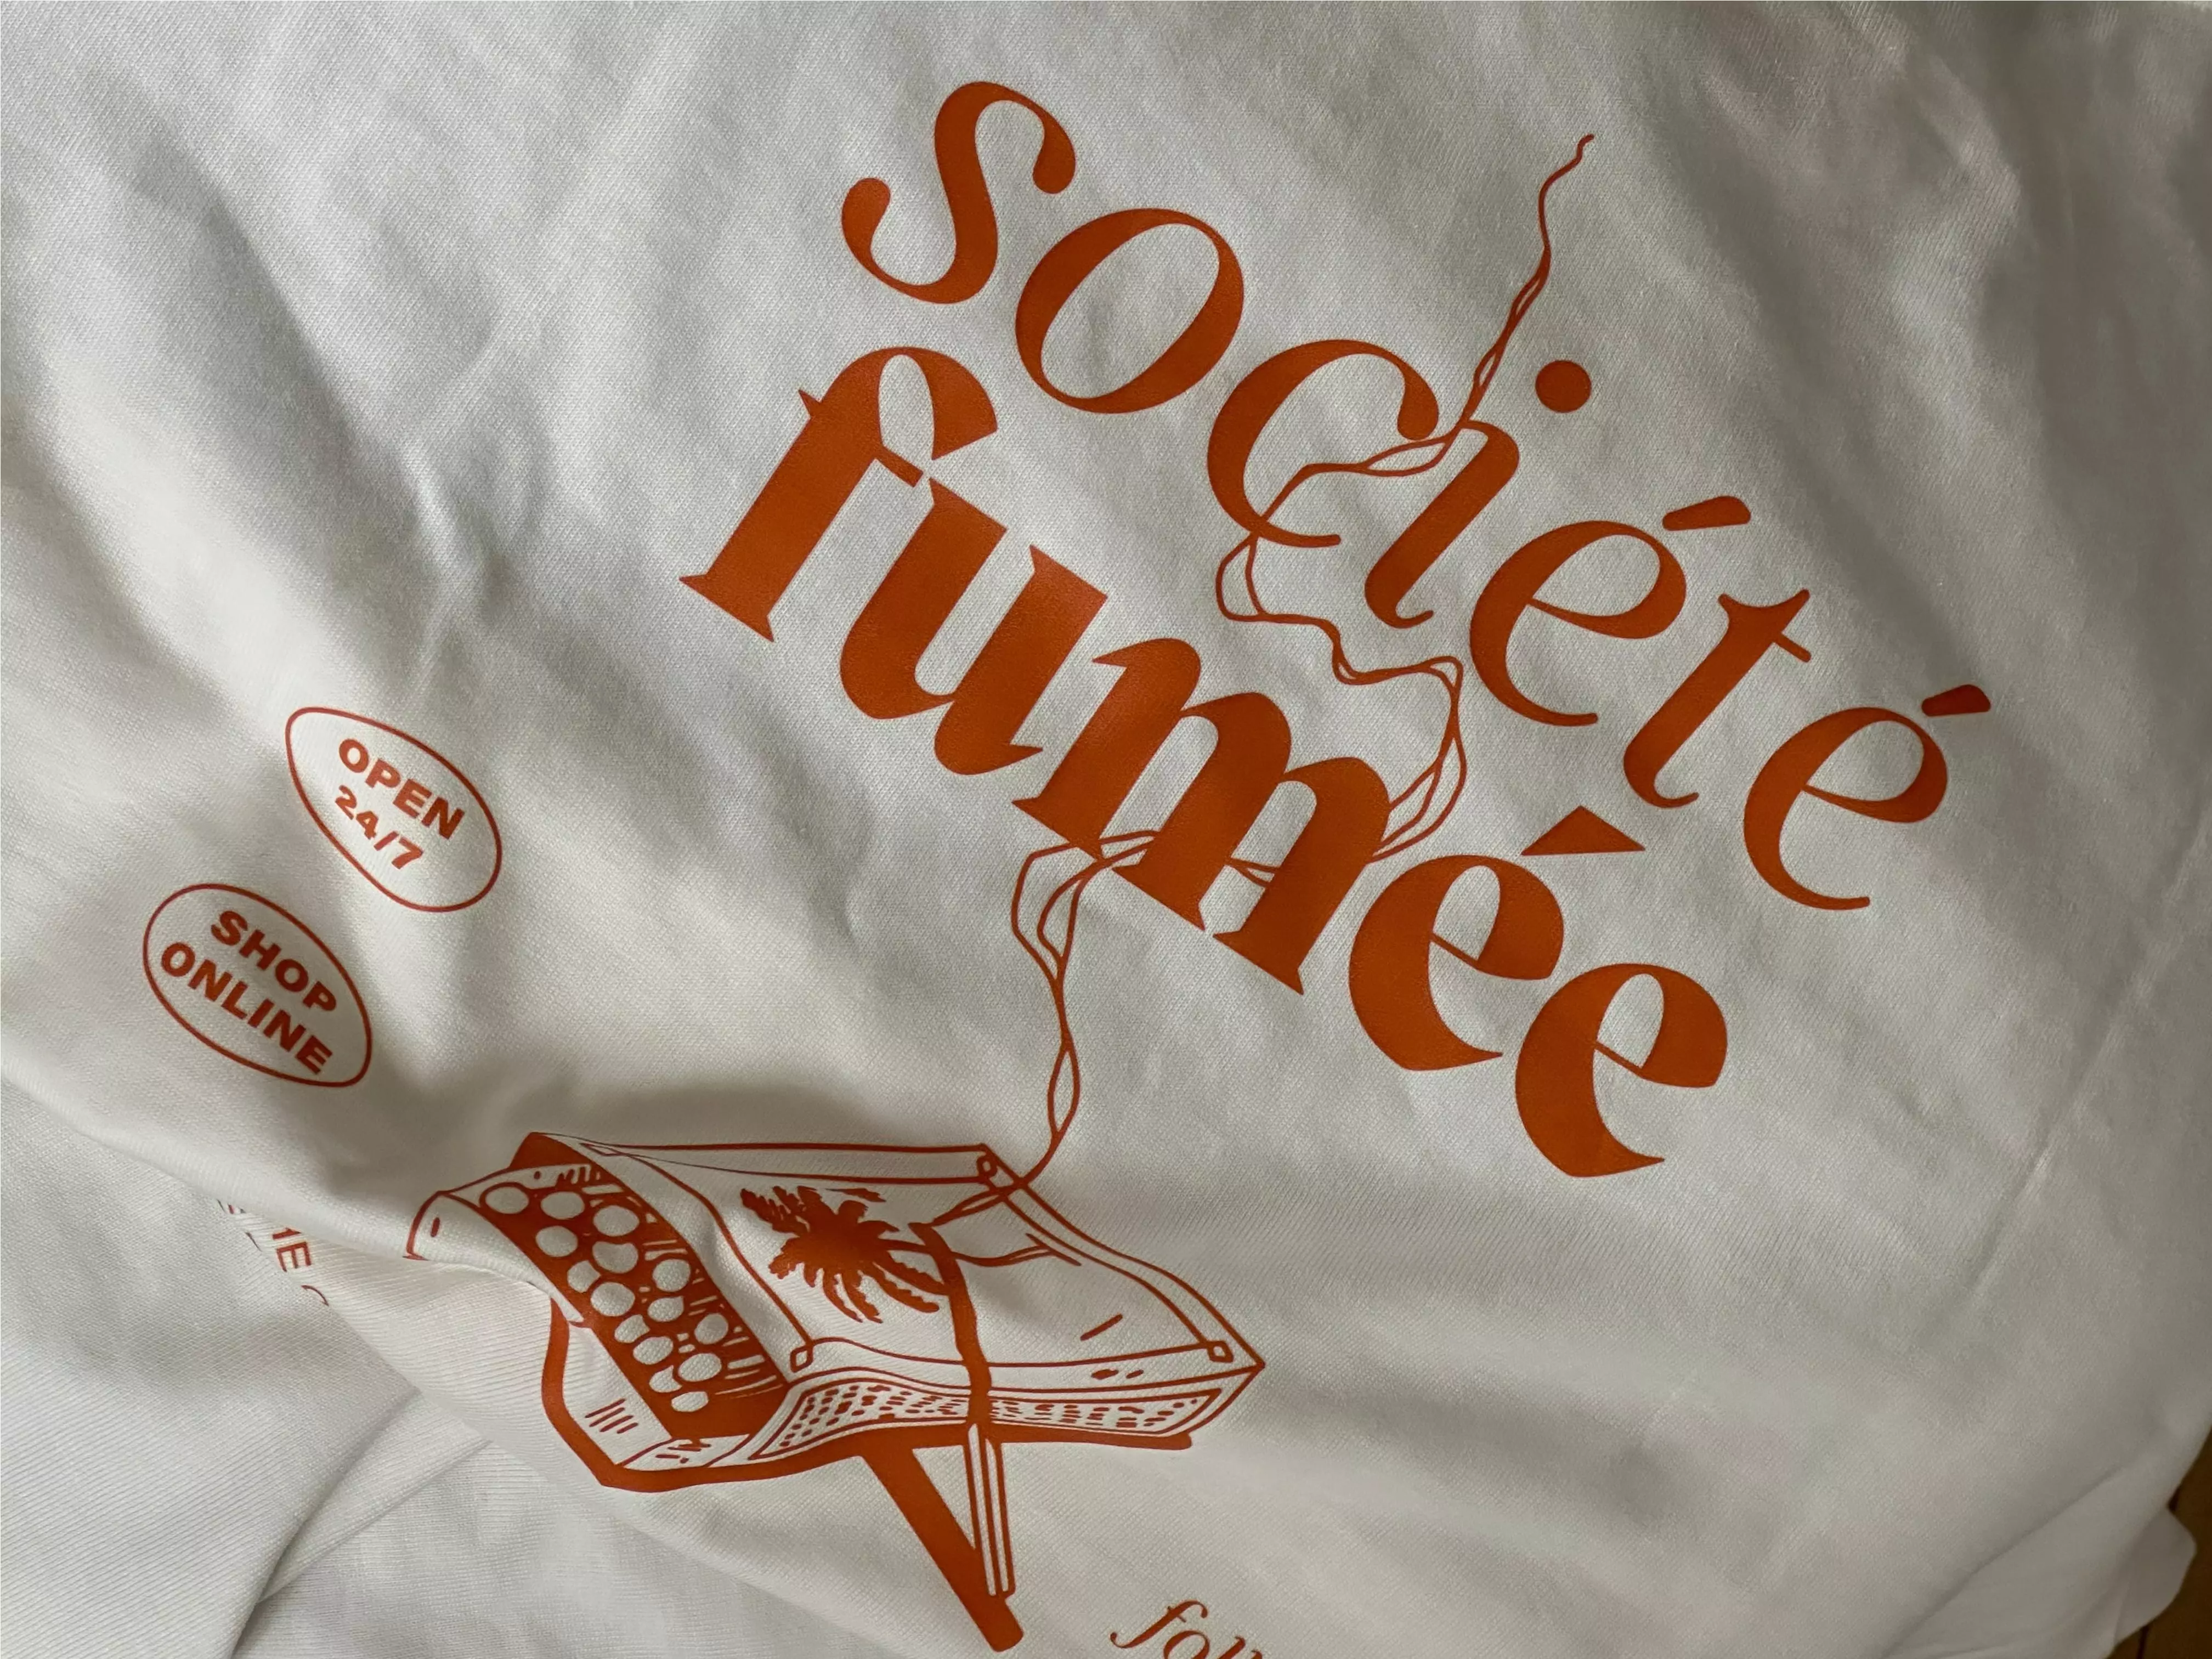 Société Fumée T-Shirt Summer Edition XL 1 Stück